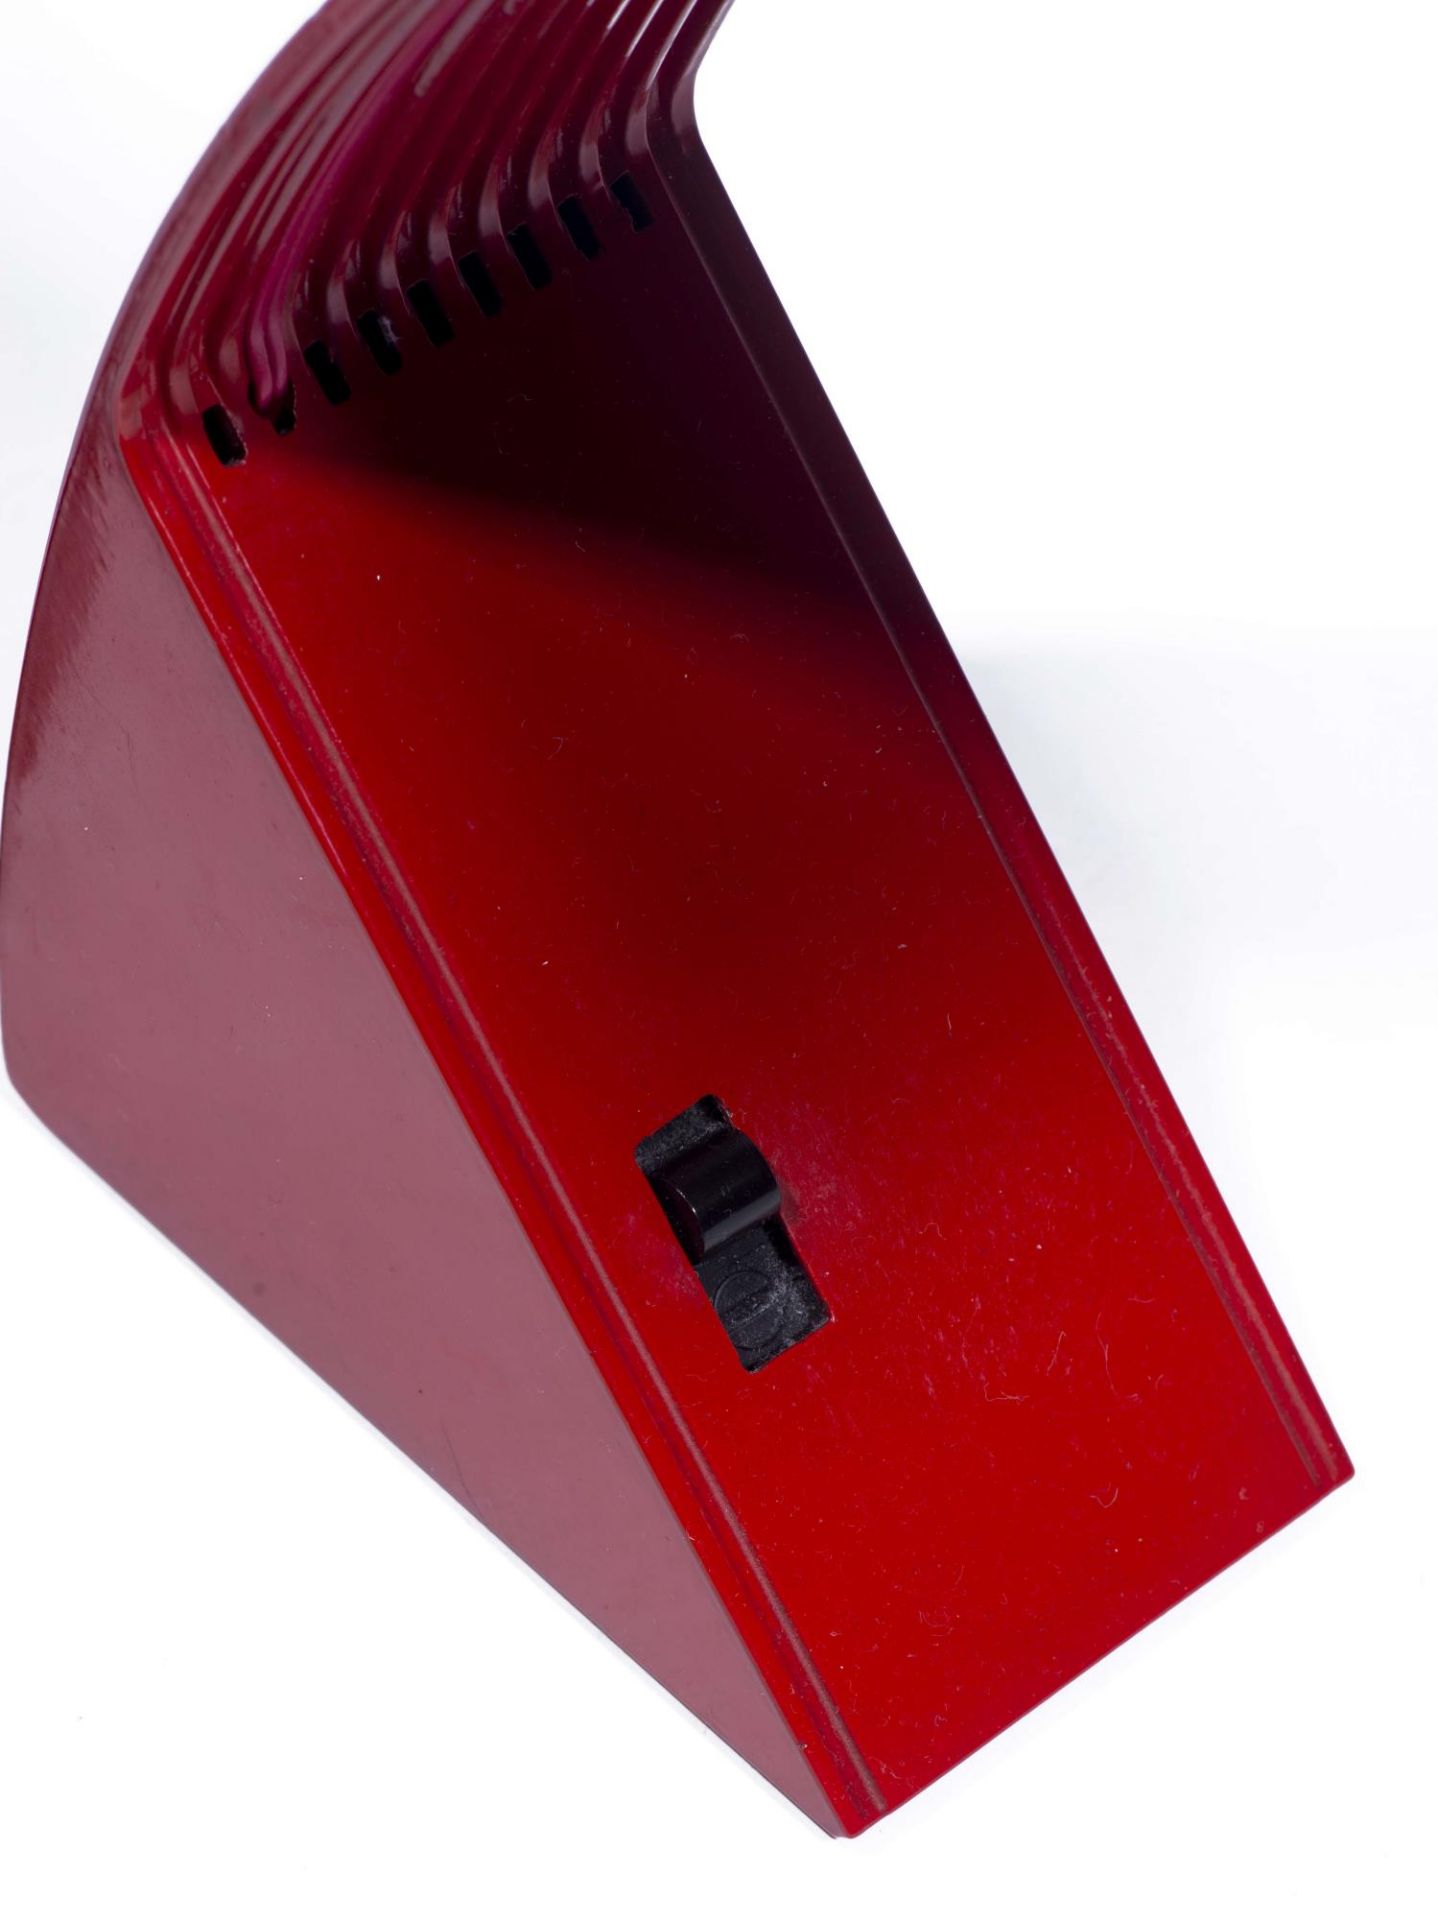 Marco Zotta (né en 1945), lampe de table en métal laqué rouge "Arcobaleno" - Marco [...] - Bild 6 aus 6